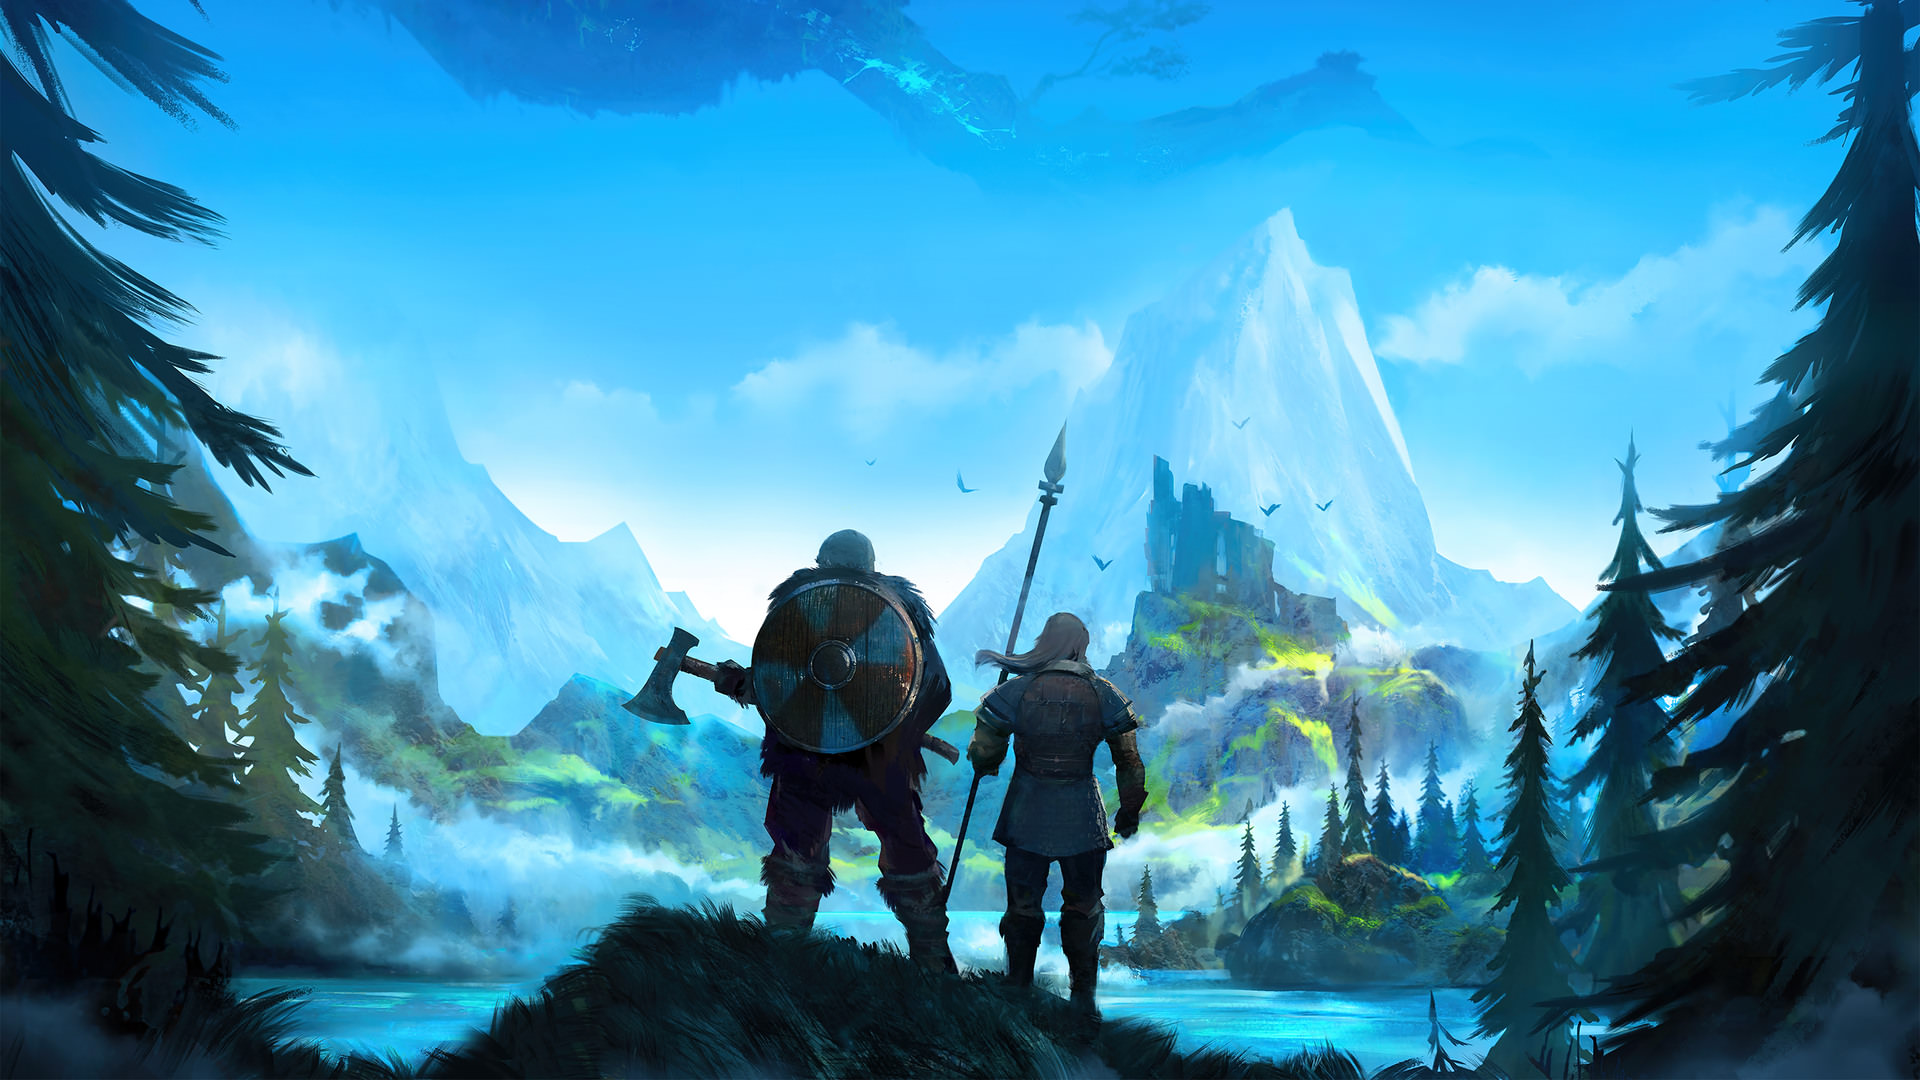 پوستری از بازی Valheim با نمایش نیزه و سپر قدیمی در محیط های اسکاندیناویایی